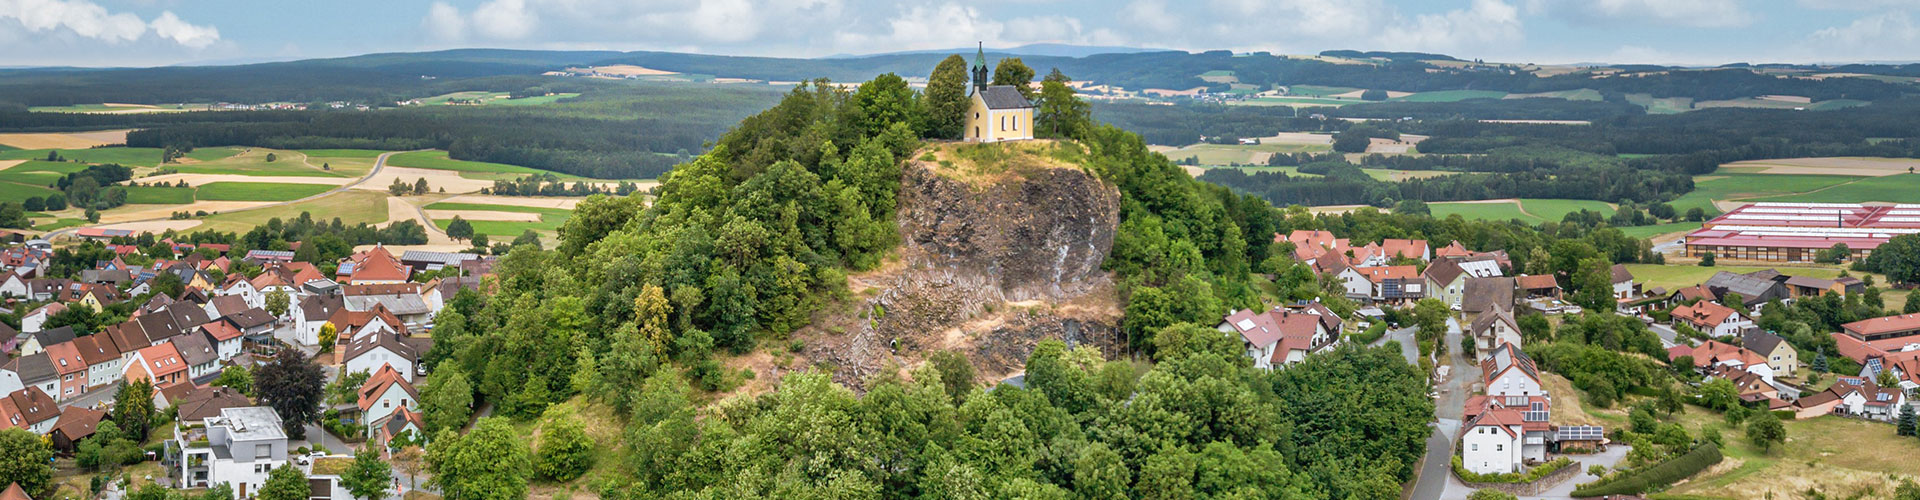 Willkommen auf dem laut Alexander von Humboldt "schönsten Basaltkegel Europas“